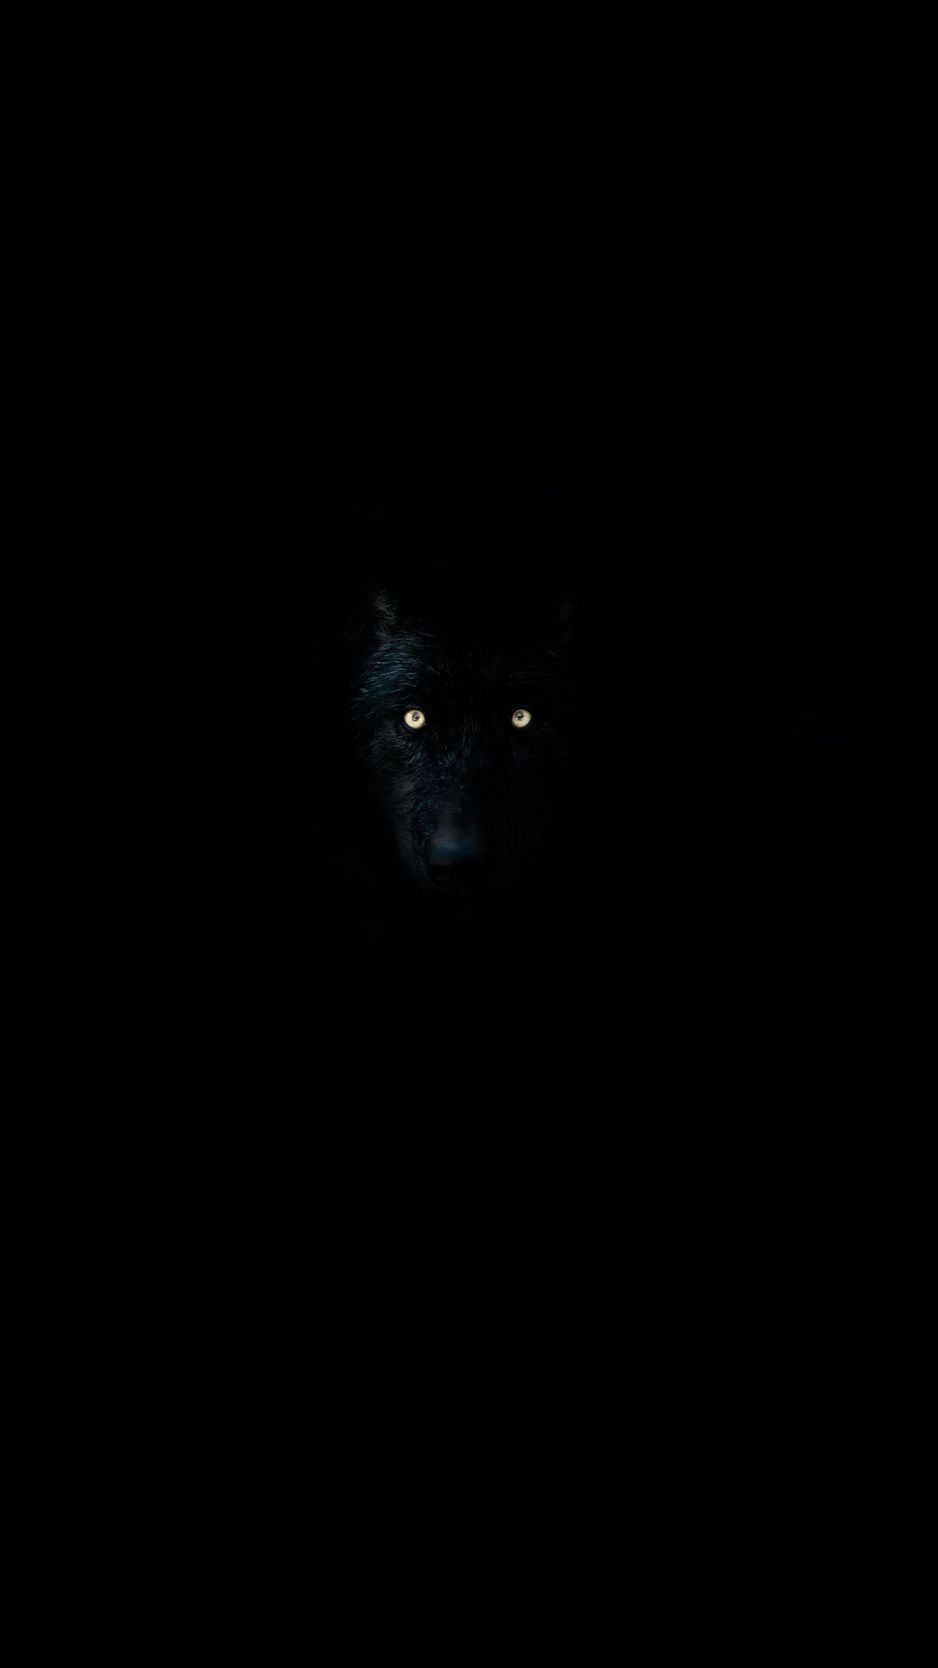 Download wallpaper 938x1668 wolf eyes darkness dark animal